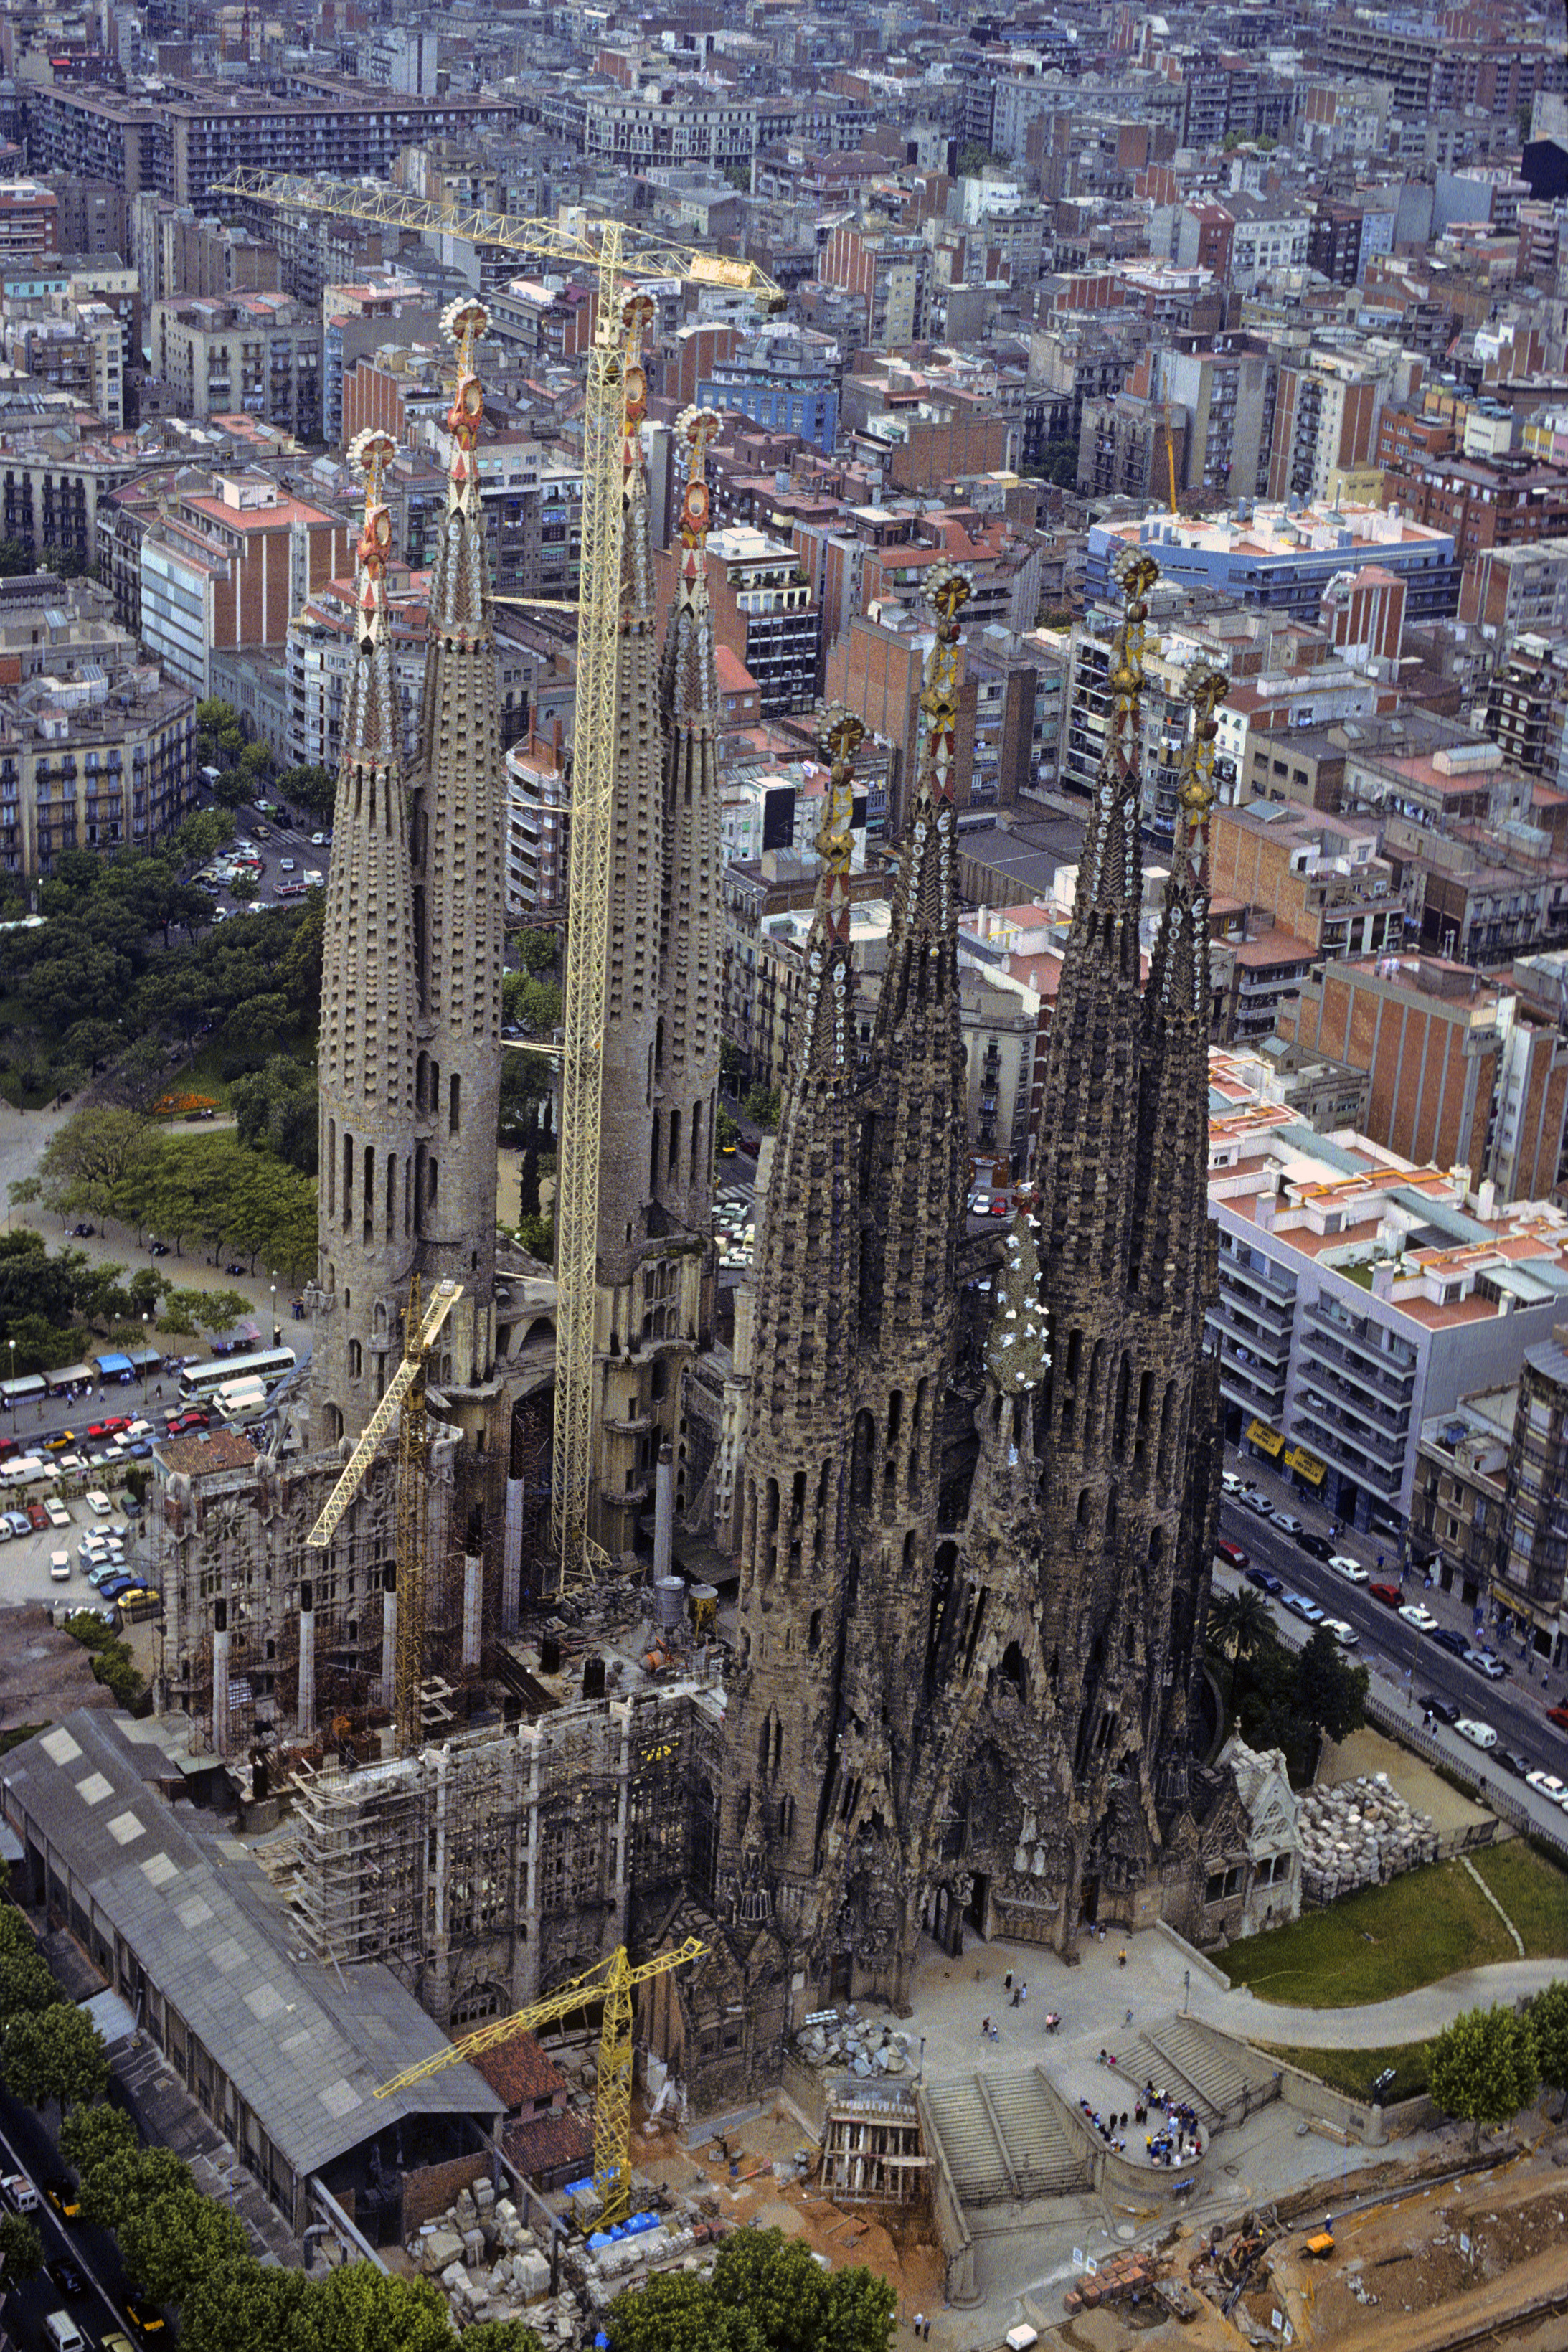  Wenige bauliche non-finitos sind berühmter als Antoni Gaudís Basilika der Heiligen Familie in Barcelona – und keines ist gefährdeter. Ihm droht Vollendung.

Die Sühnekirche der Heiligen Familie – spanisch-katalanisch Temple Expiatori de la Sagrada Família –  ist als non-finito der Baugeschichte eine Ikone der Entschleunigung. Antoni Gaudí übernahm im Jahr 1883 das bestehende gotisierende Projekt einer riesigen Basilika für 13 000 Gläubige: ein 90 Meter langes fünfschiffiges Langhaus überkreuzt sich mit …